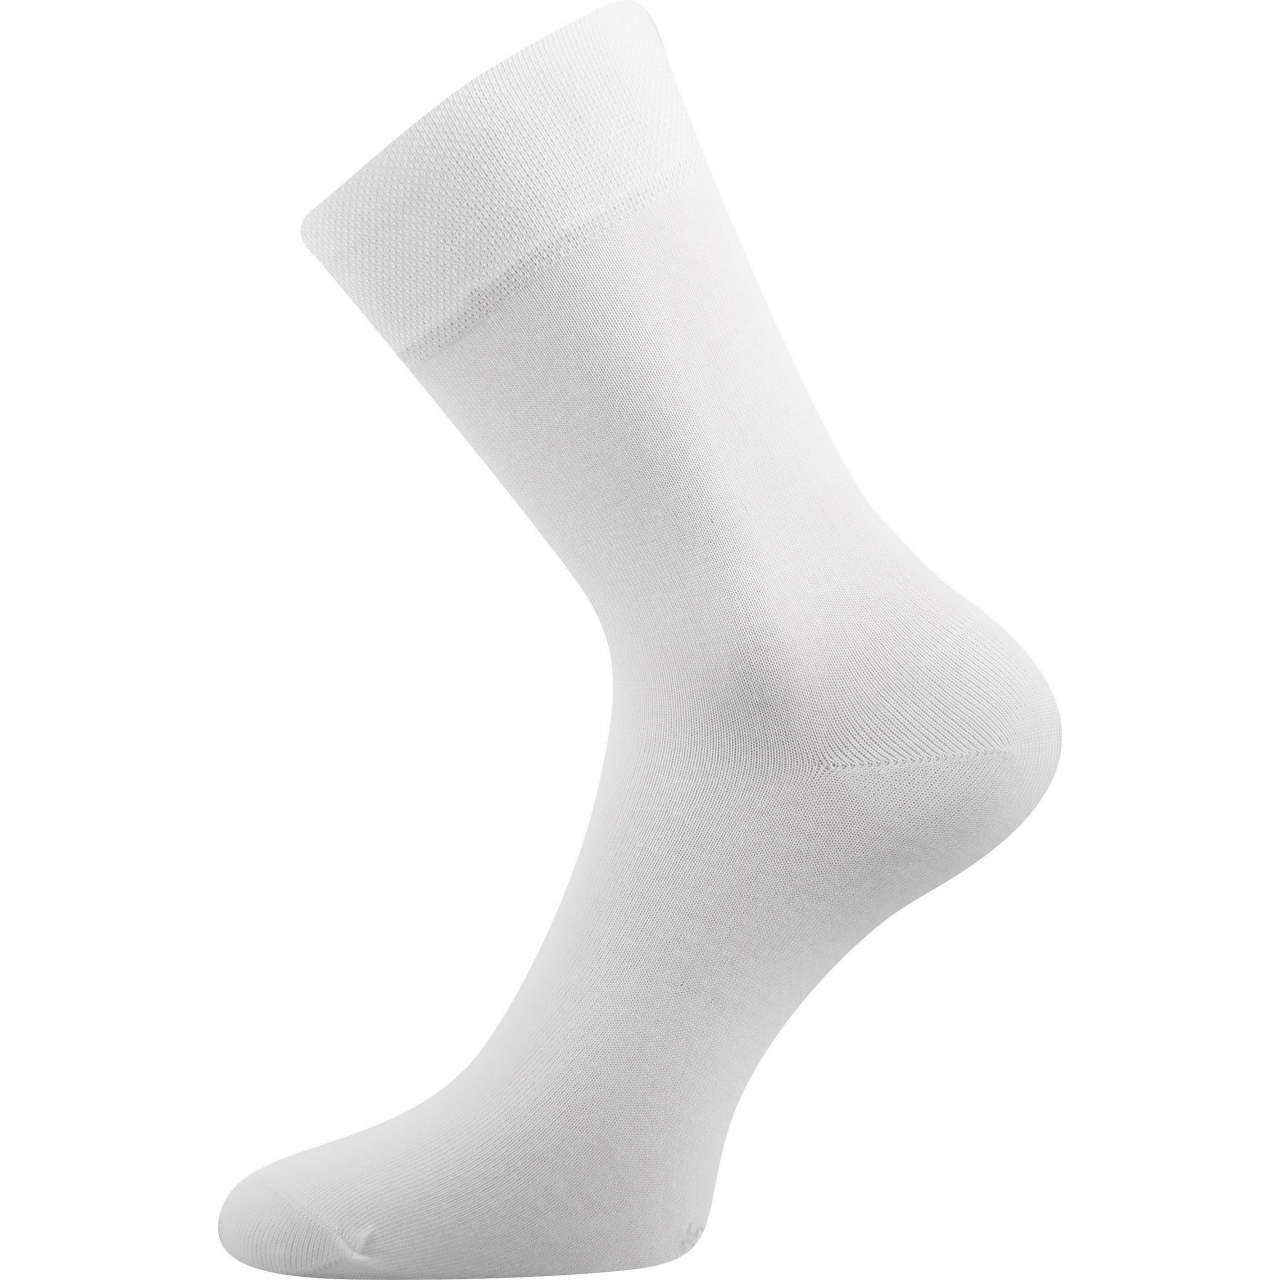 Ponožky společenské Lonka Dypak - bílé, 43-46